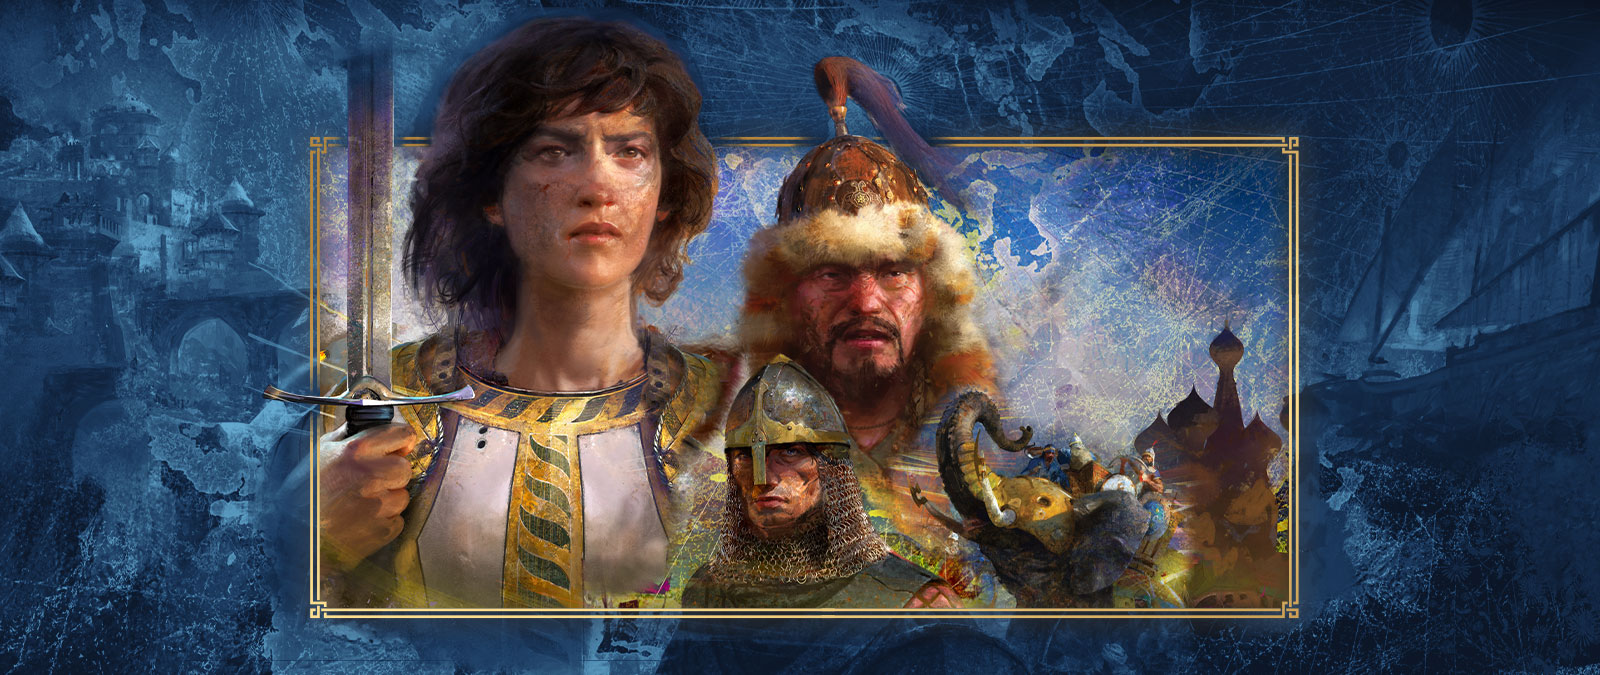 Múltiples personajes de diferentes civilizaciones posan juntos frente a representaciones de batalla.